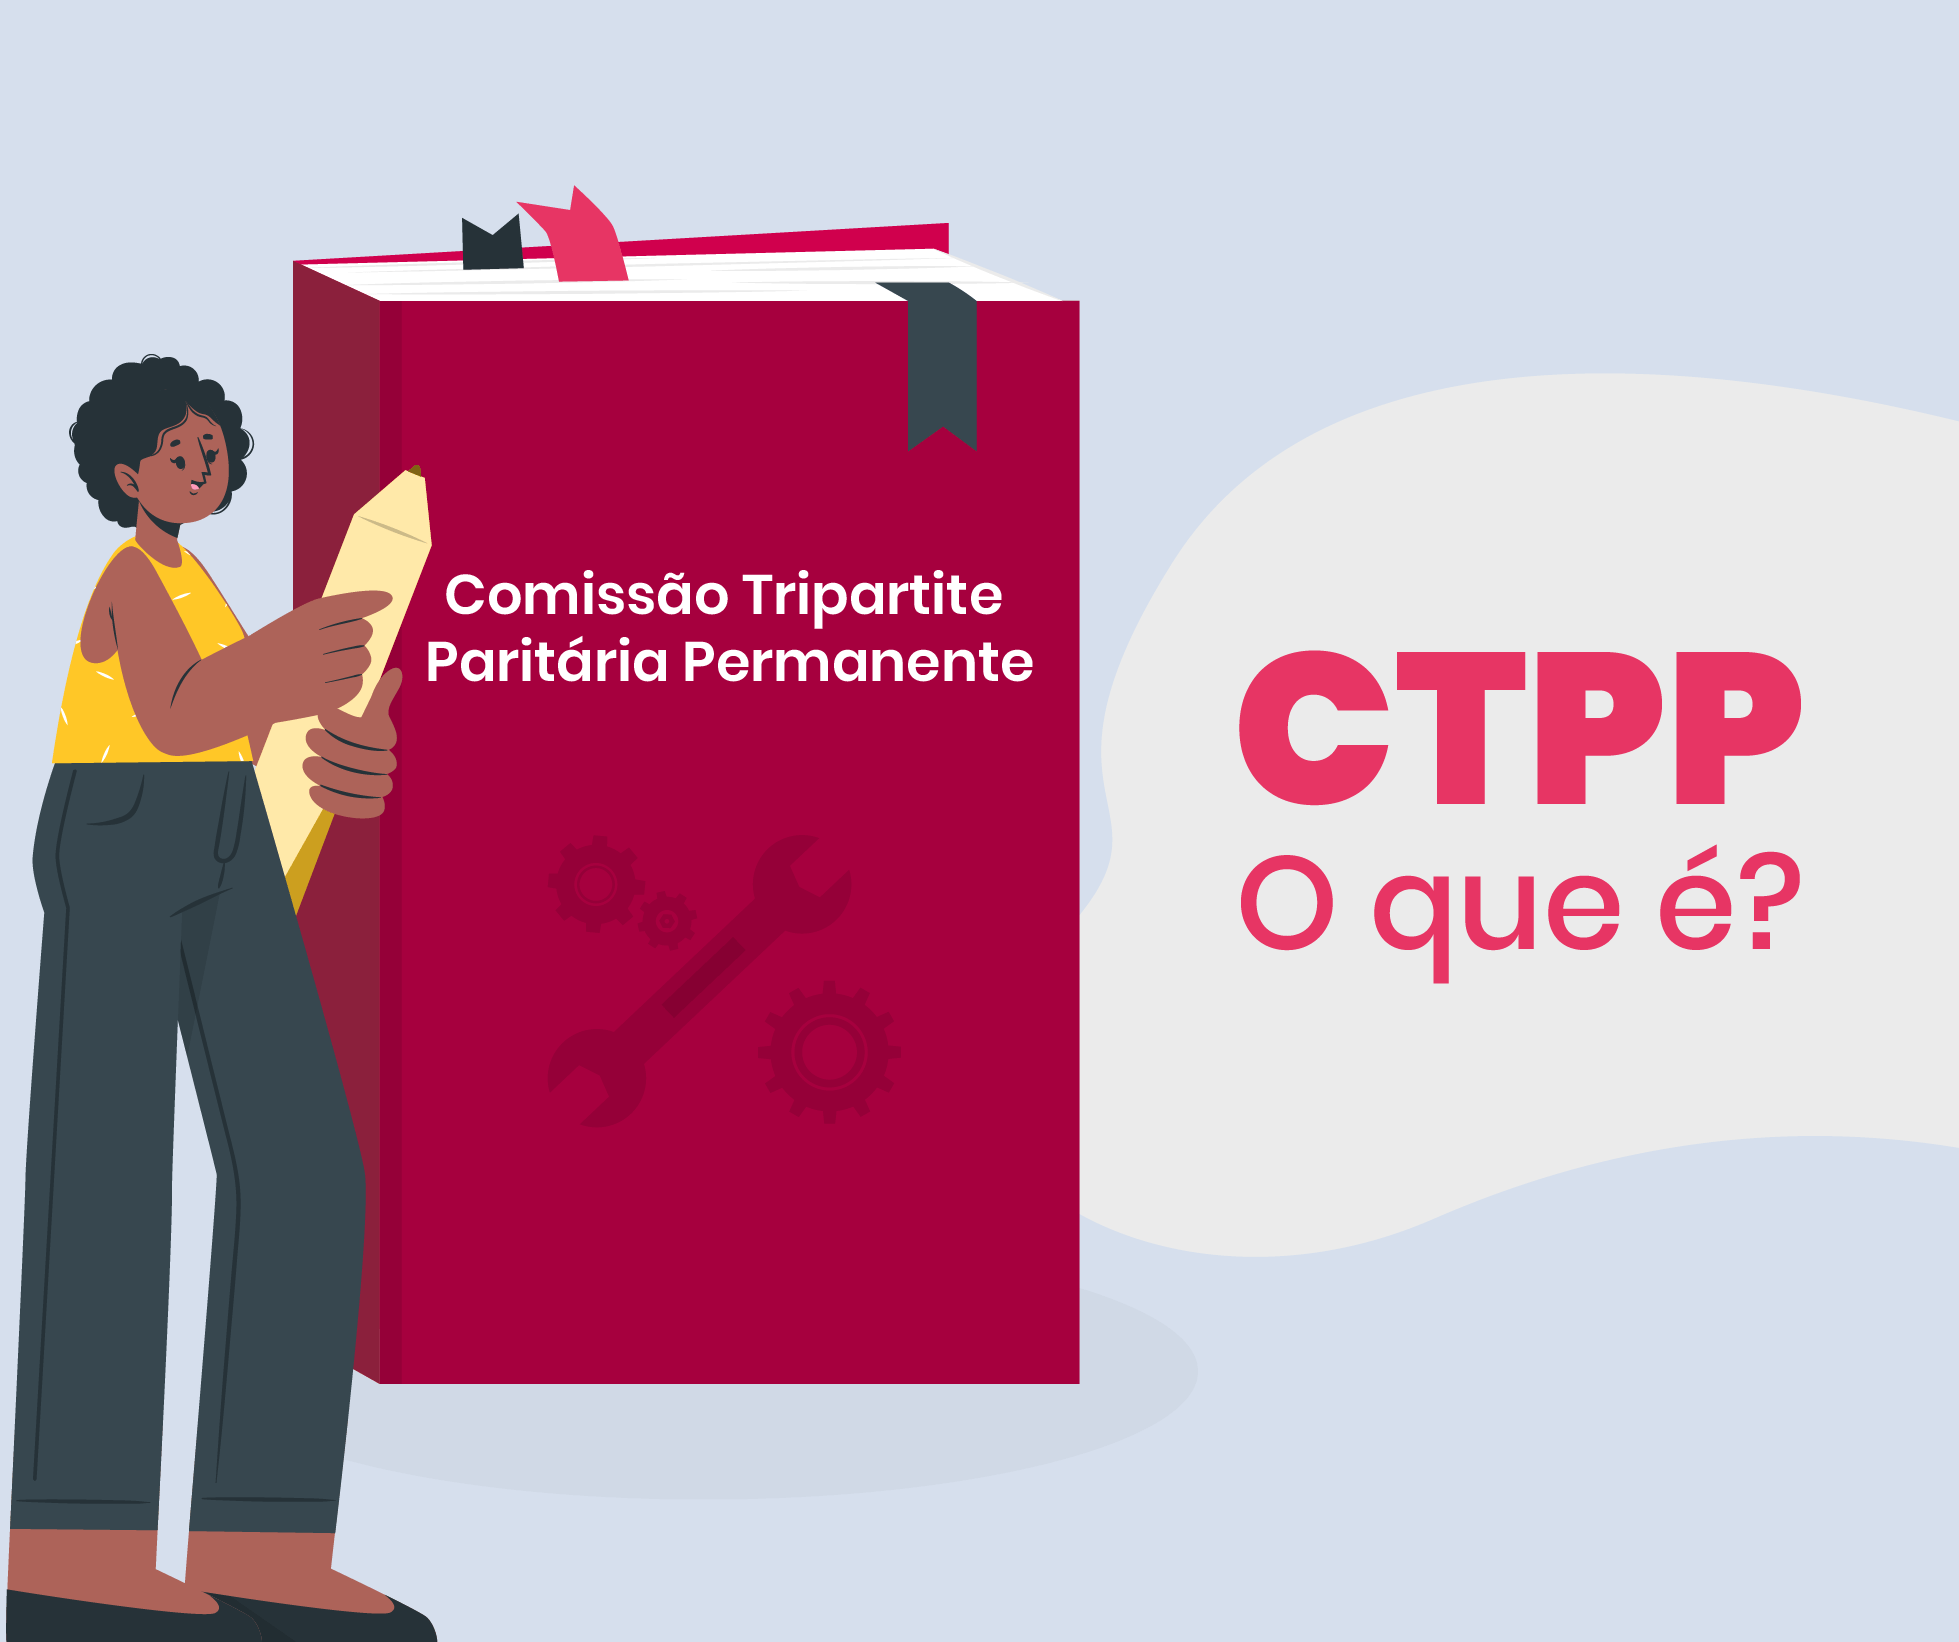 CTPP comissão tripartite partitária